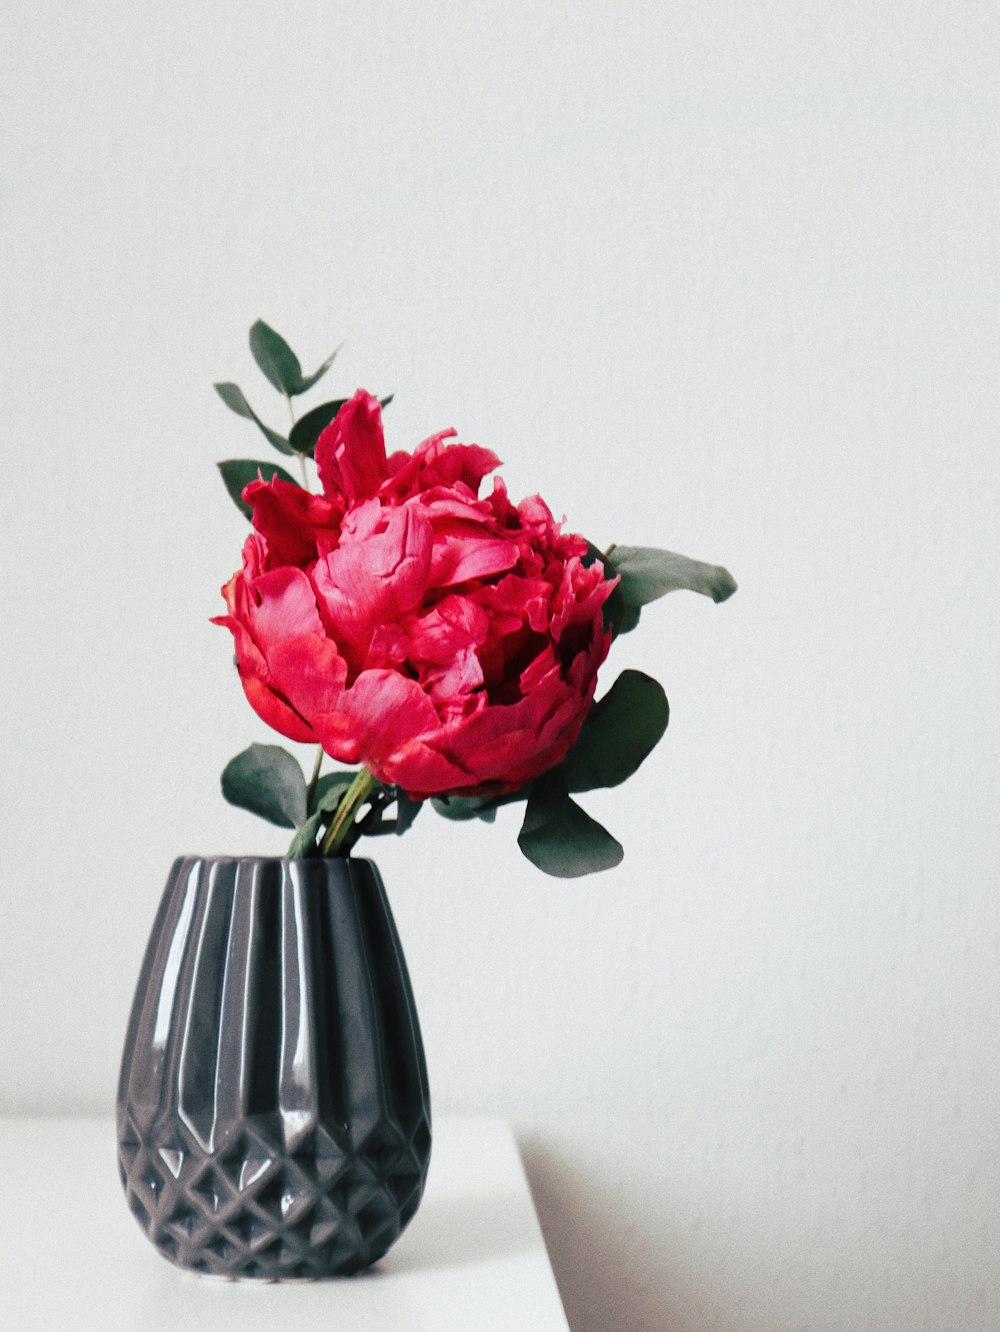 red petaled flower inside black vase